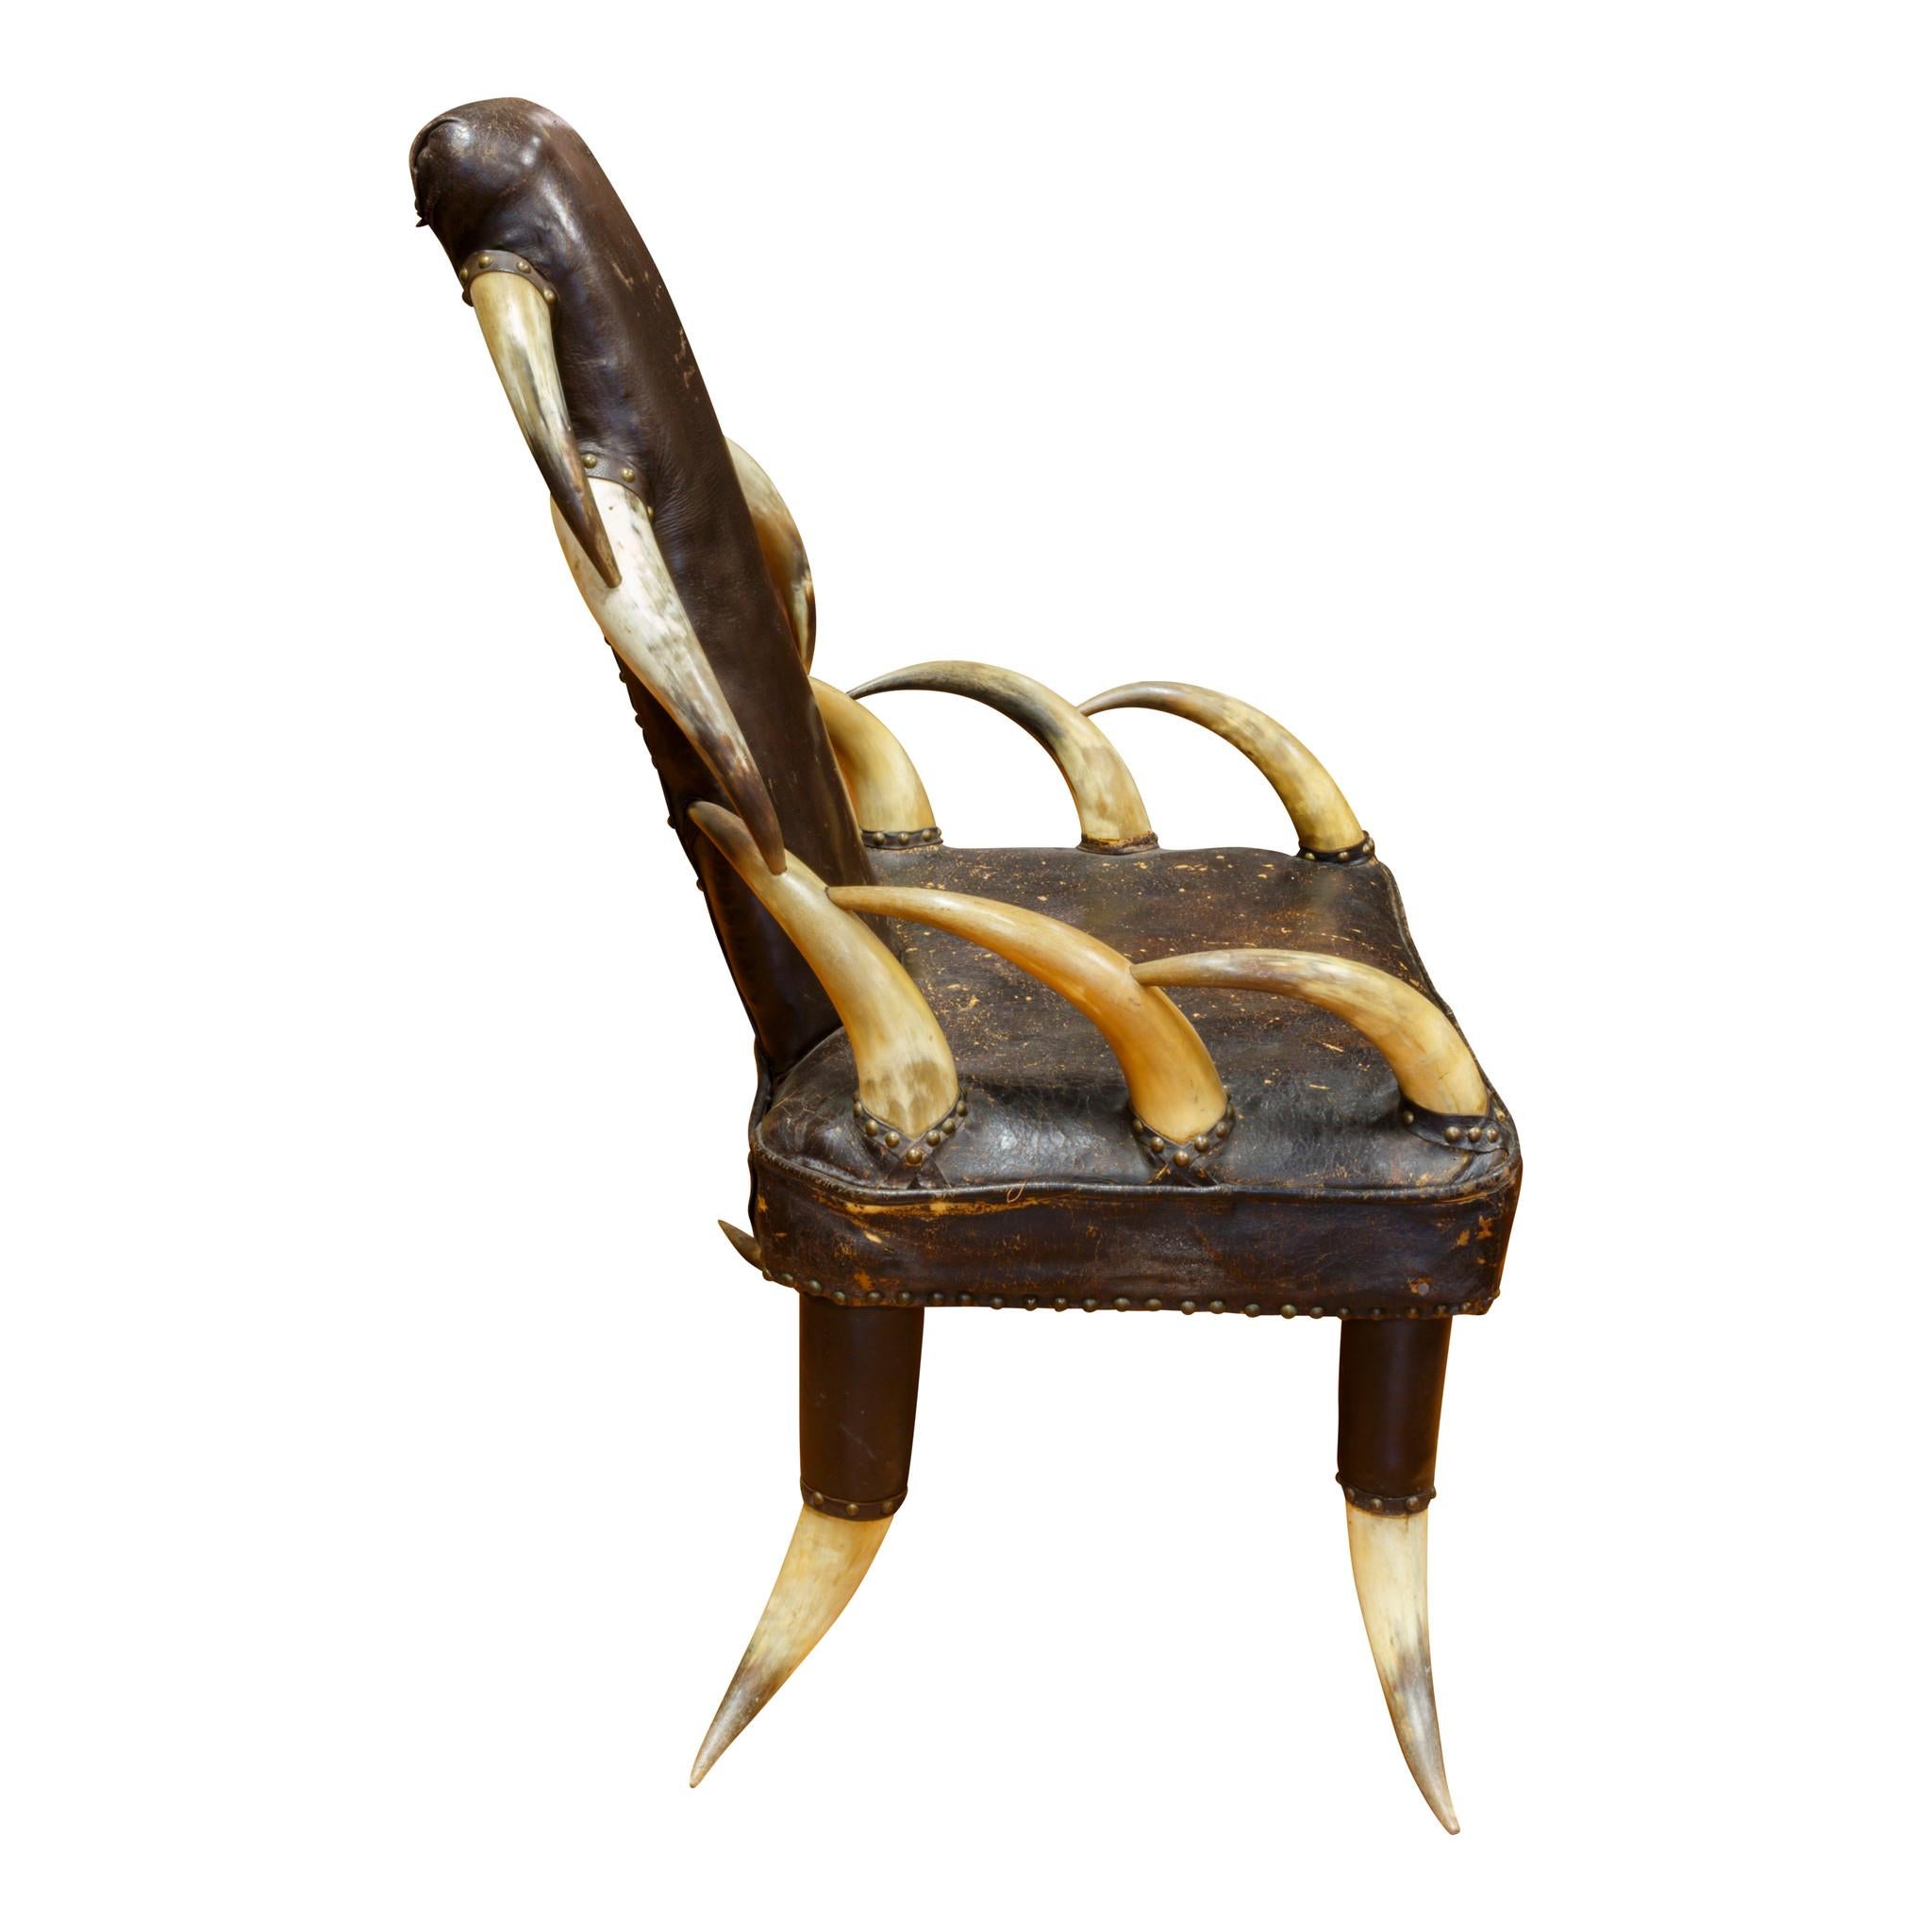 Vierzehnter Horn-Stuhl aus dem 19. Jahrhundert. Originales braunes Leder mit gehefteter Polsterung. Eine Skulptur und ein funktionales Stück.

Zeitraum: Letztes Viertel des 19. Jahrhunderts
Herkunft: Montana
Größe: Füße 33 